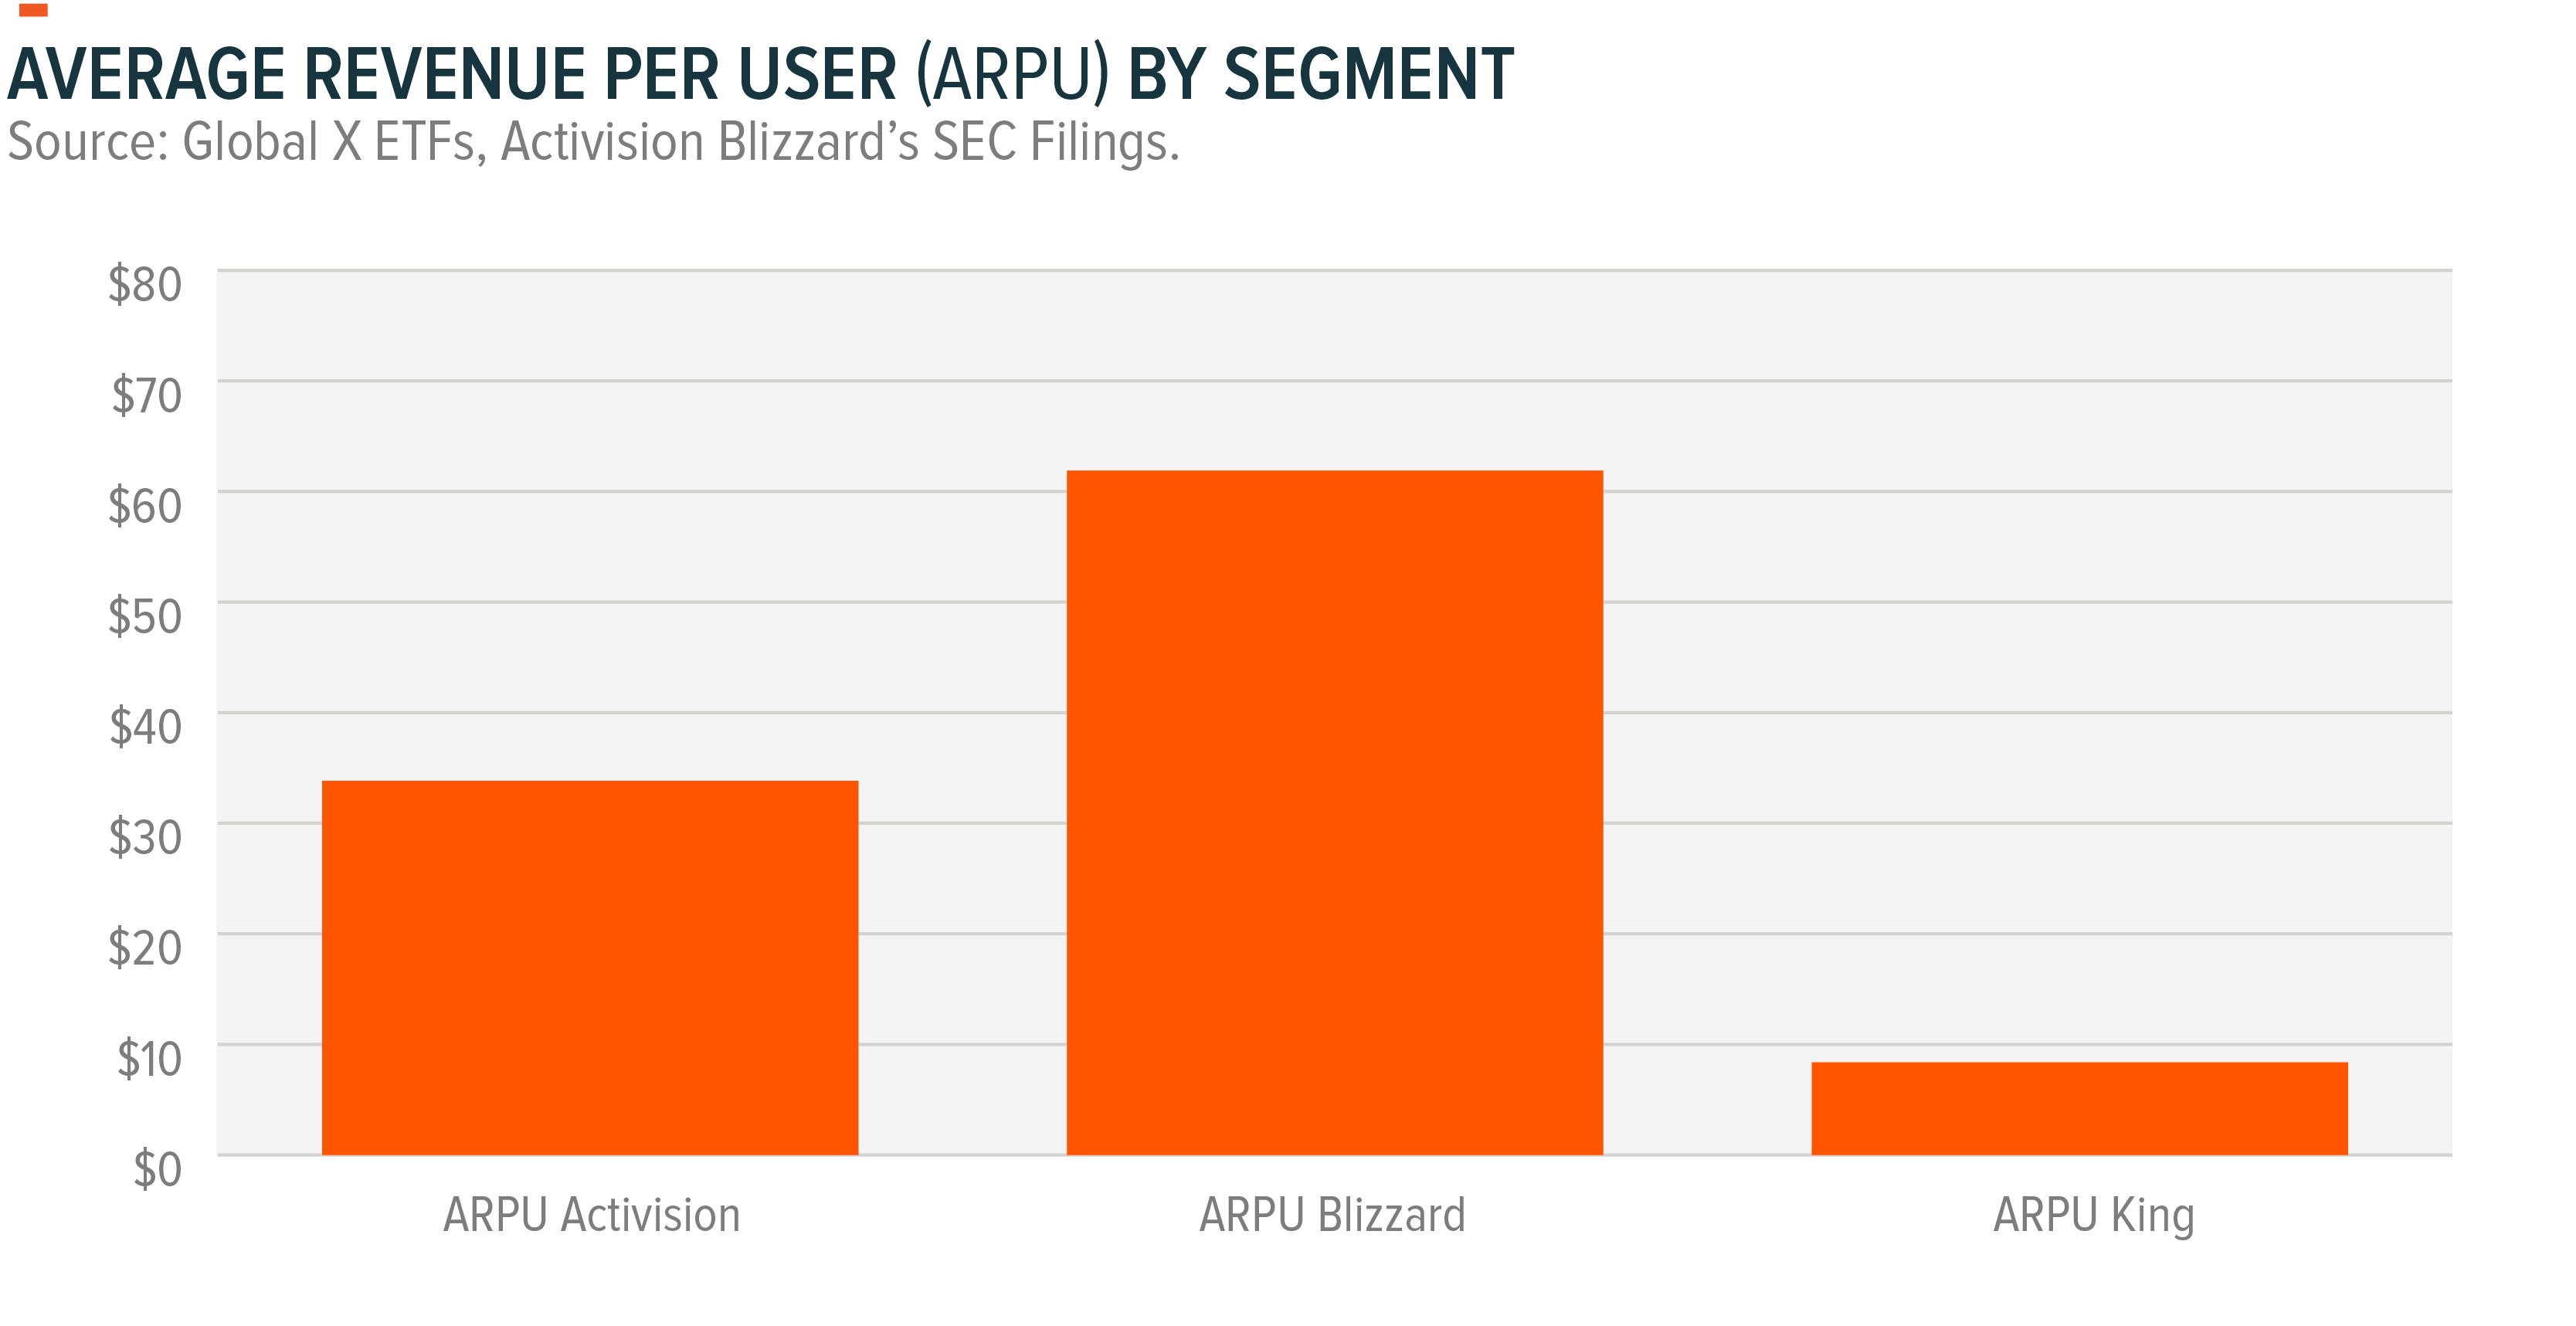 Activision Blizzard's average revenue per user (ARPU) by segment